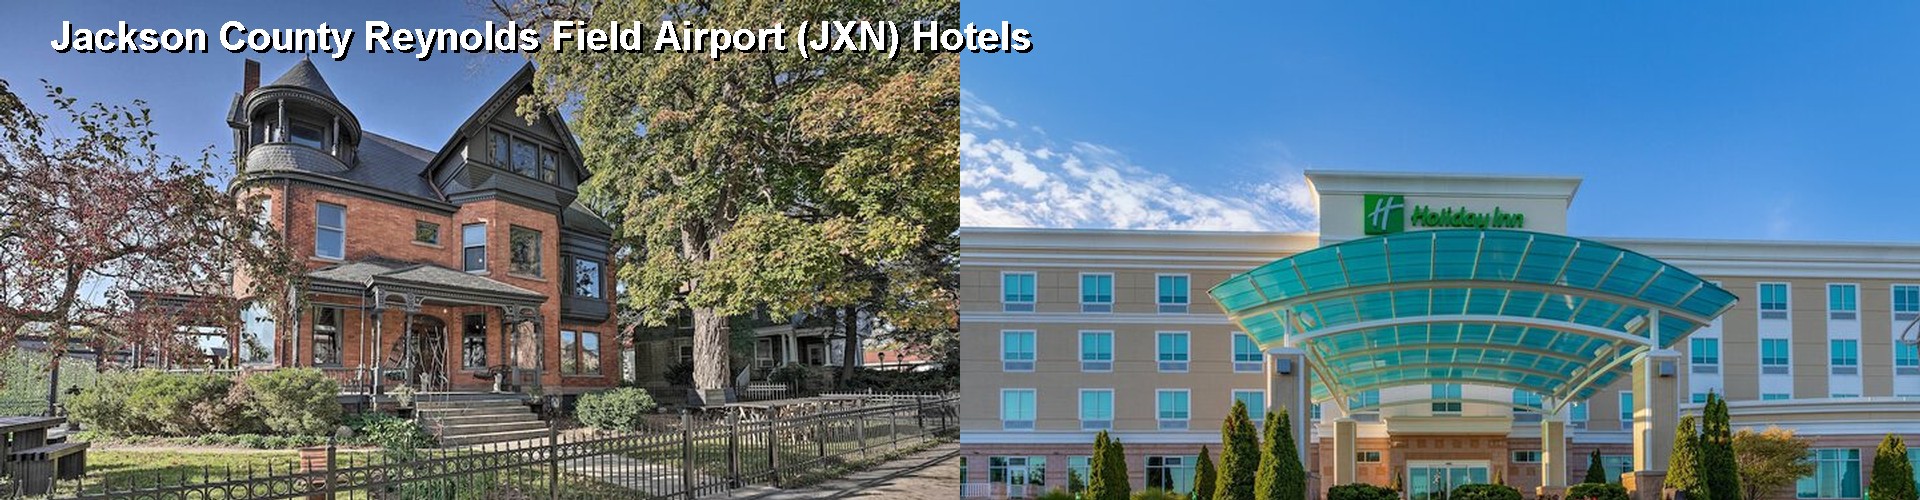 4 Best Hotels near Jackson County Reynolds Field Airport (JXN)